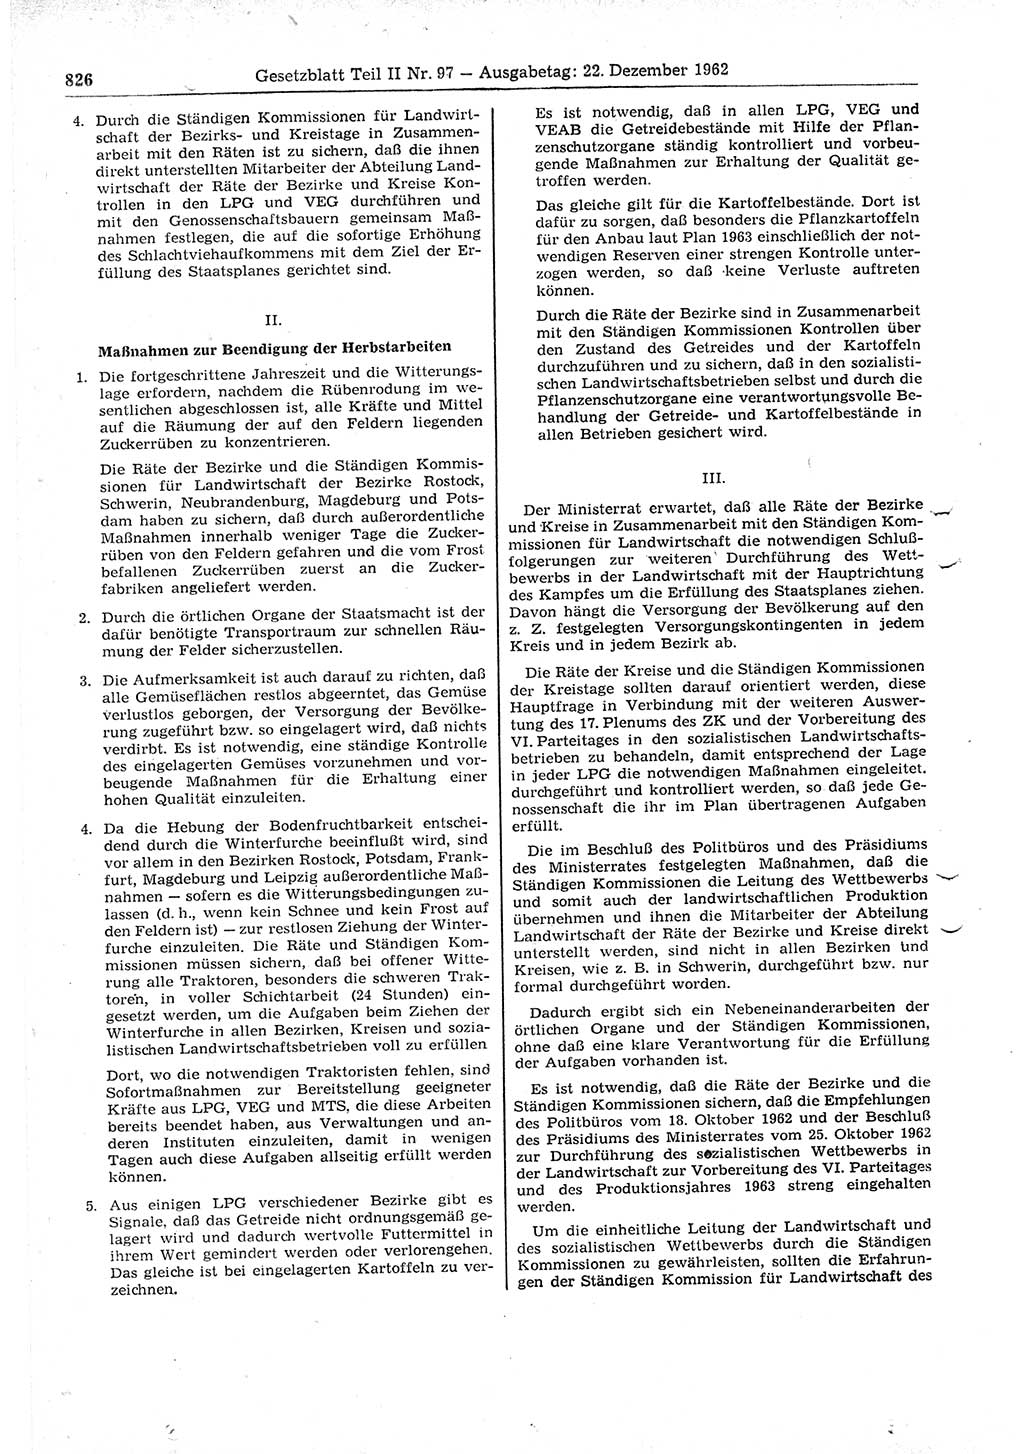 Gesetzblatt (GBl.) der Deutschen Demokratischen Republik (DDR) Teil ⅠⅠ 1962, Seite 826 (GBl. DDR ⅠⅠ 1962, S. 826)